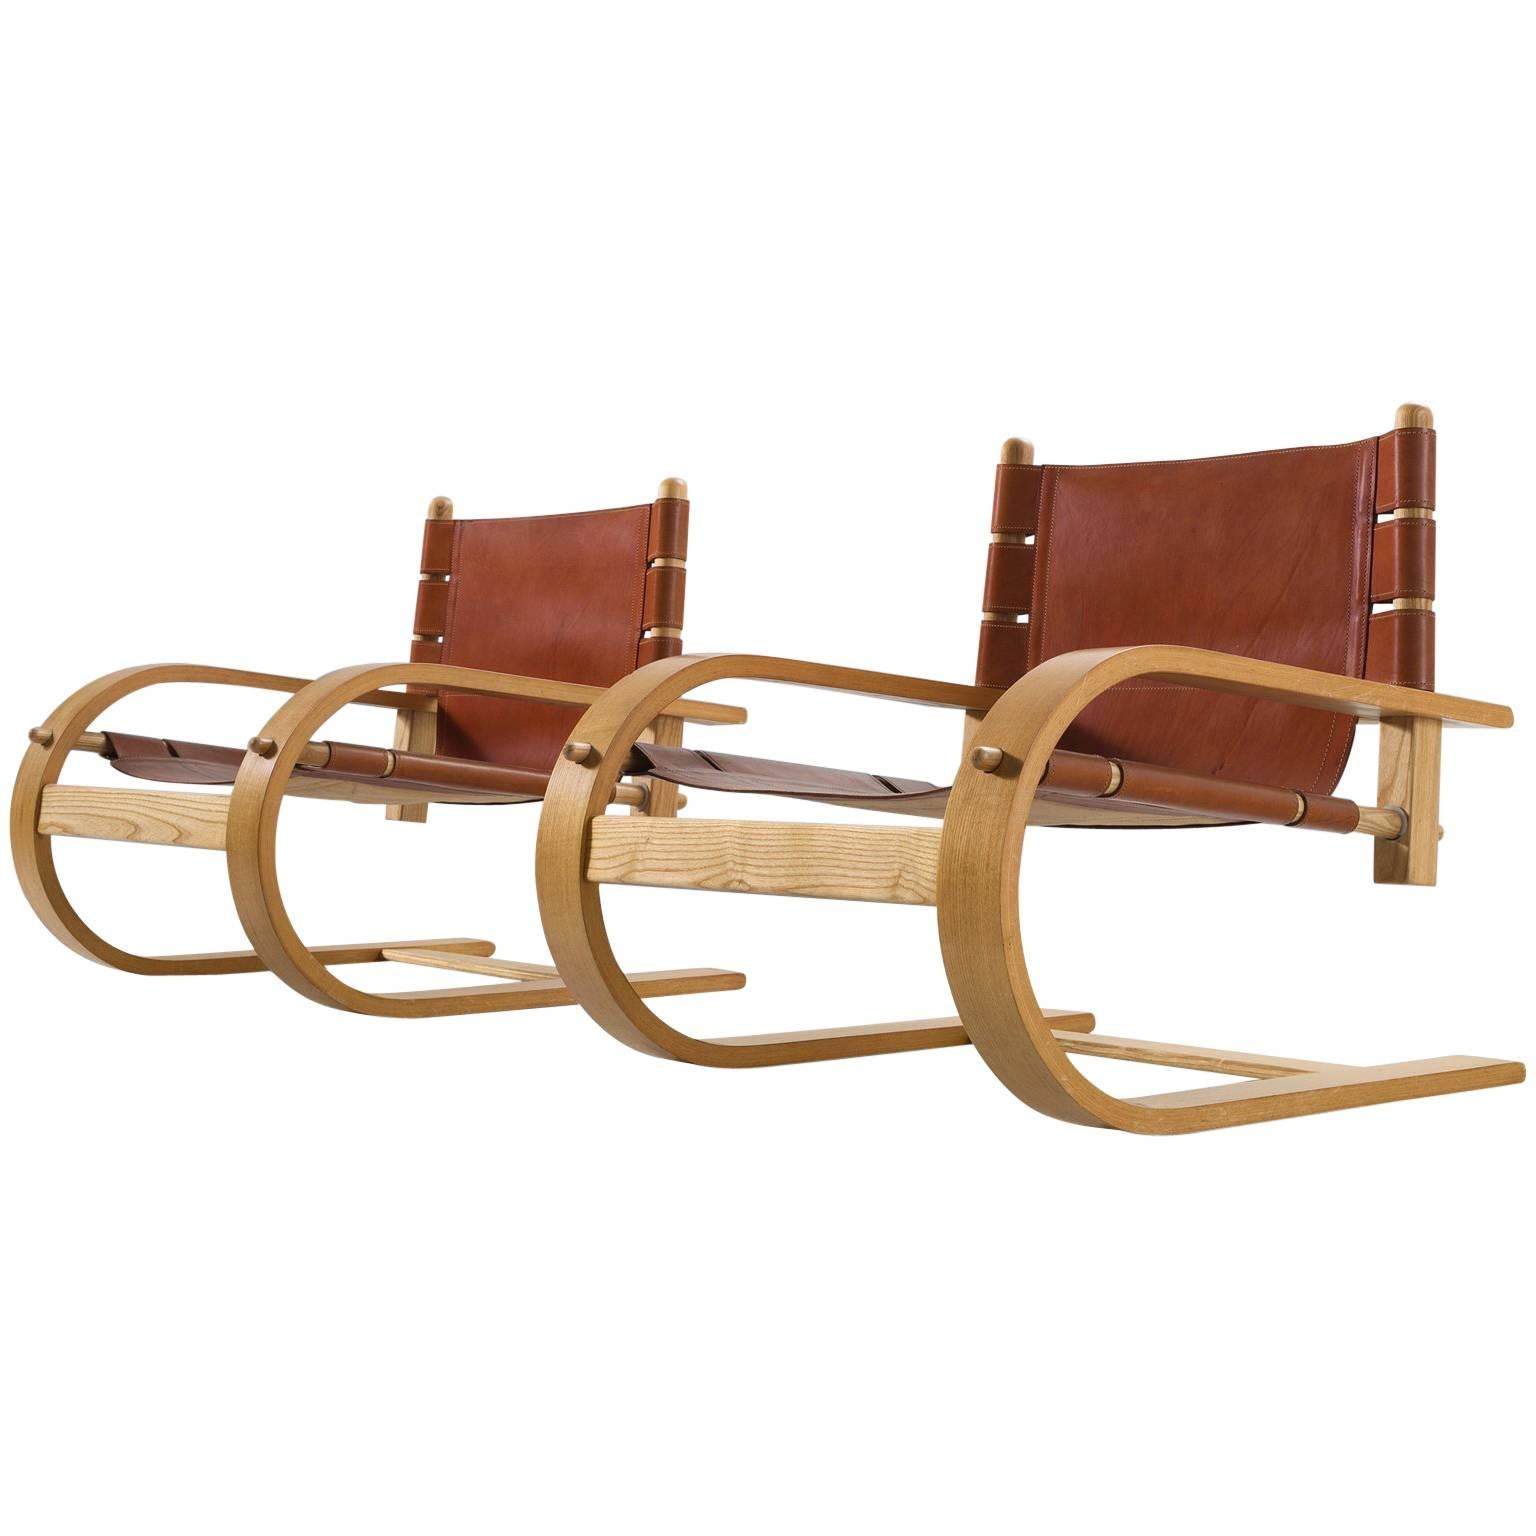 Two Scacciapensieri Chairs by Poltronova